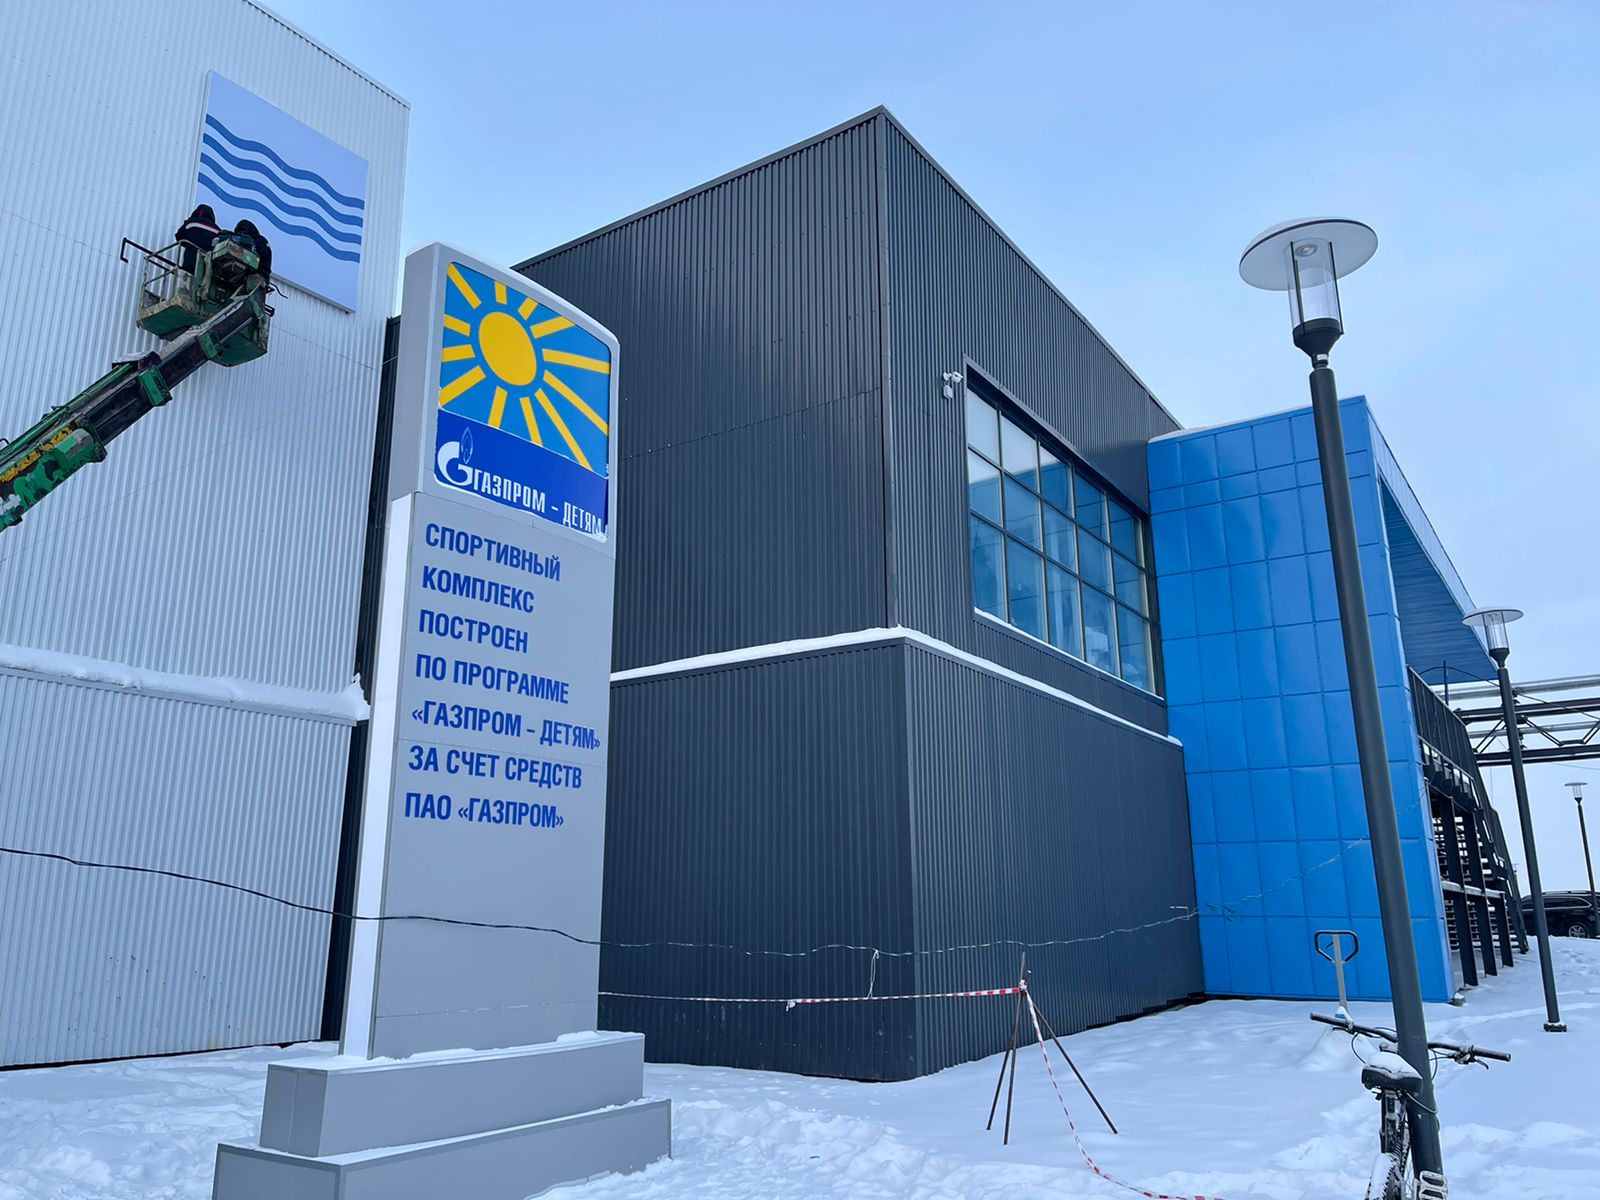 Спортивный комплекс с катком и бассейном в Якутске откроют в начале февраля